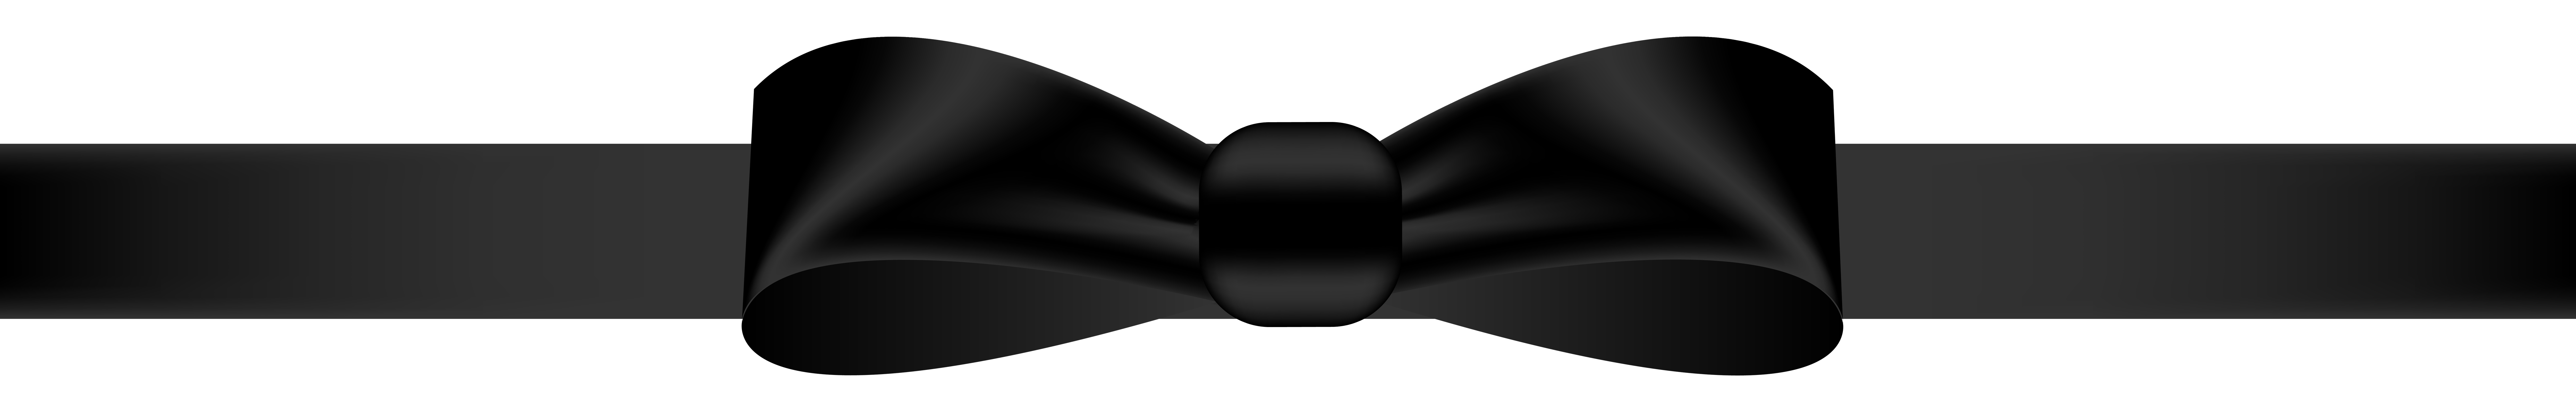 Black Bow Transparent PNG Clip Art Image 